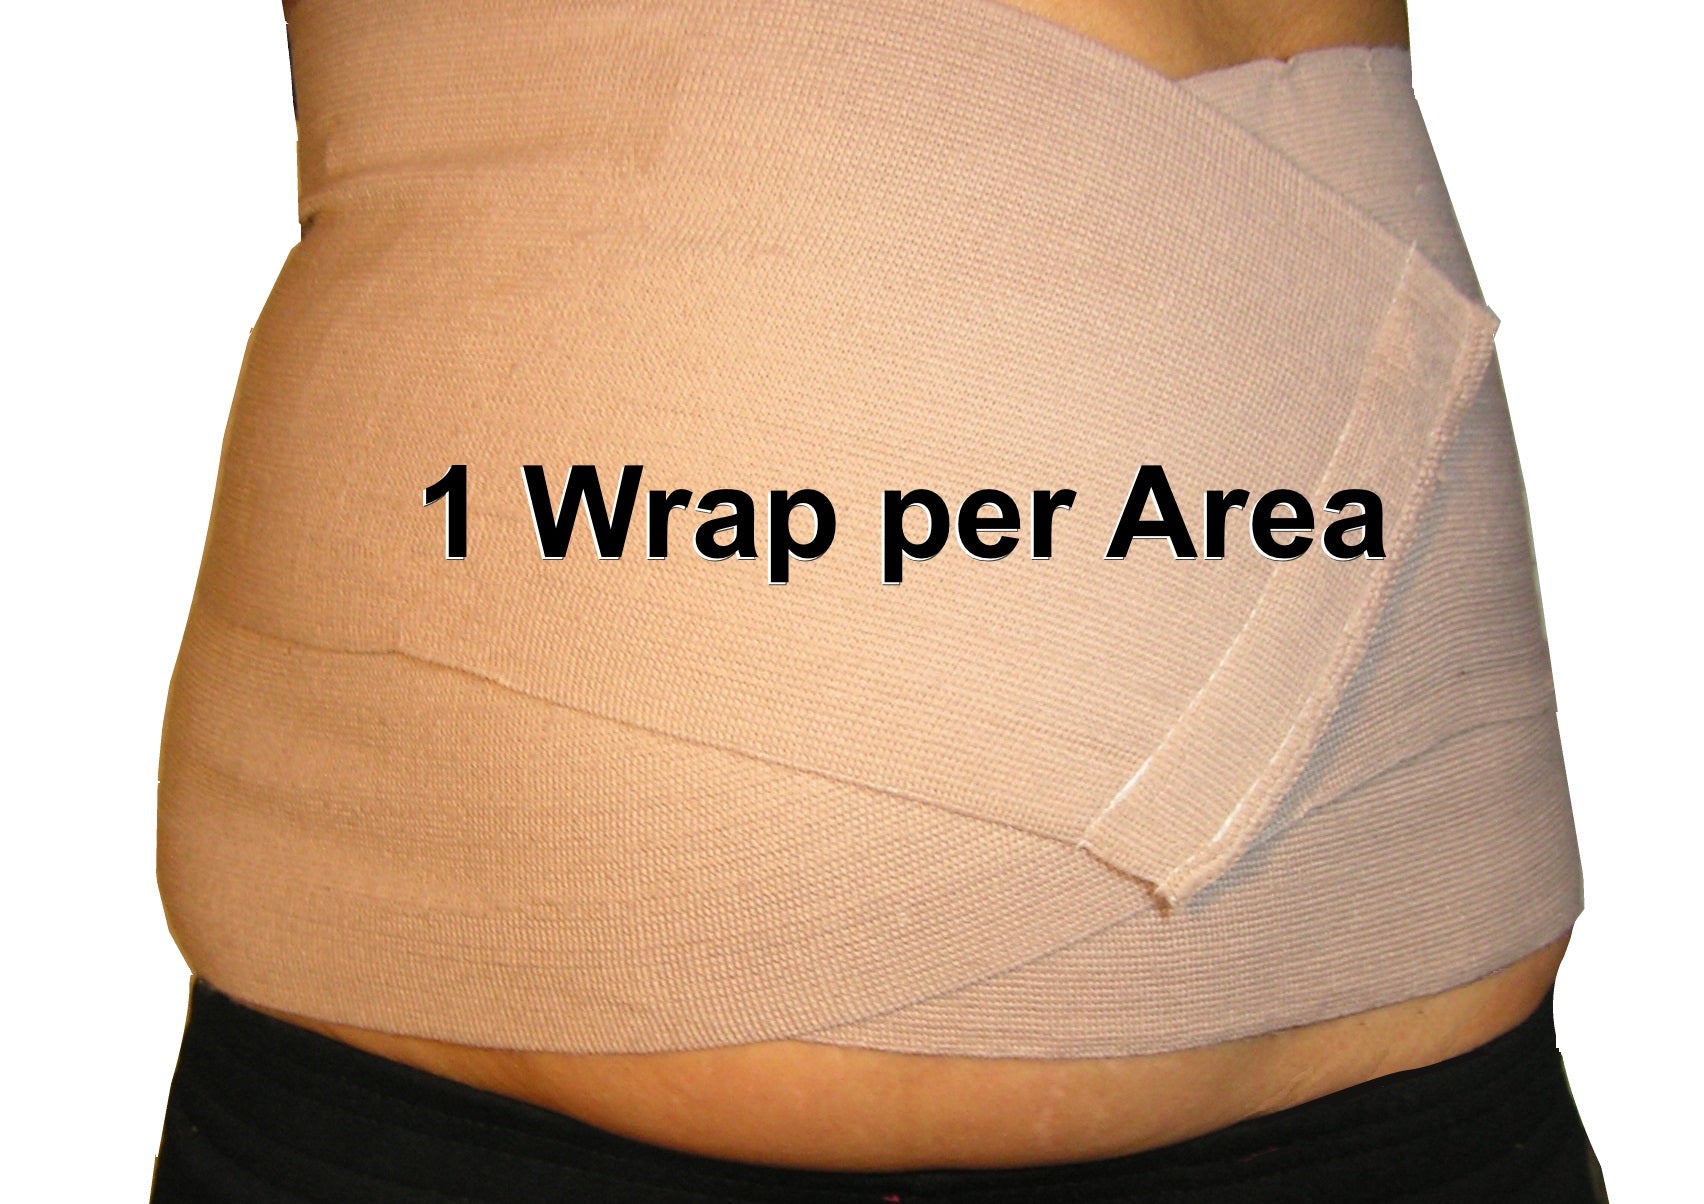 Pack of 3 Body Wrap Elastic Bandages - Ace Bandage with Velco - Neutripure